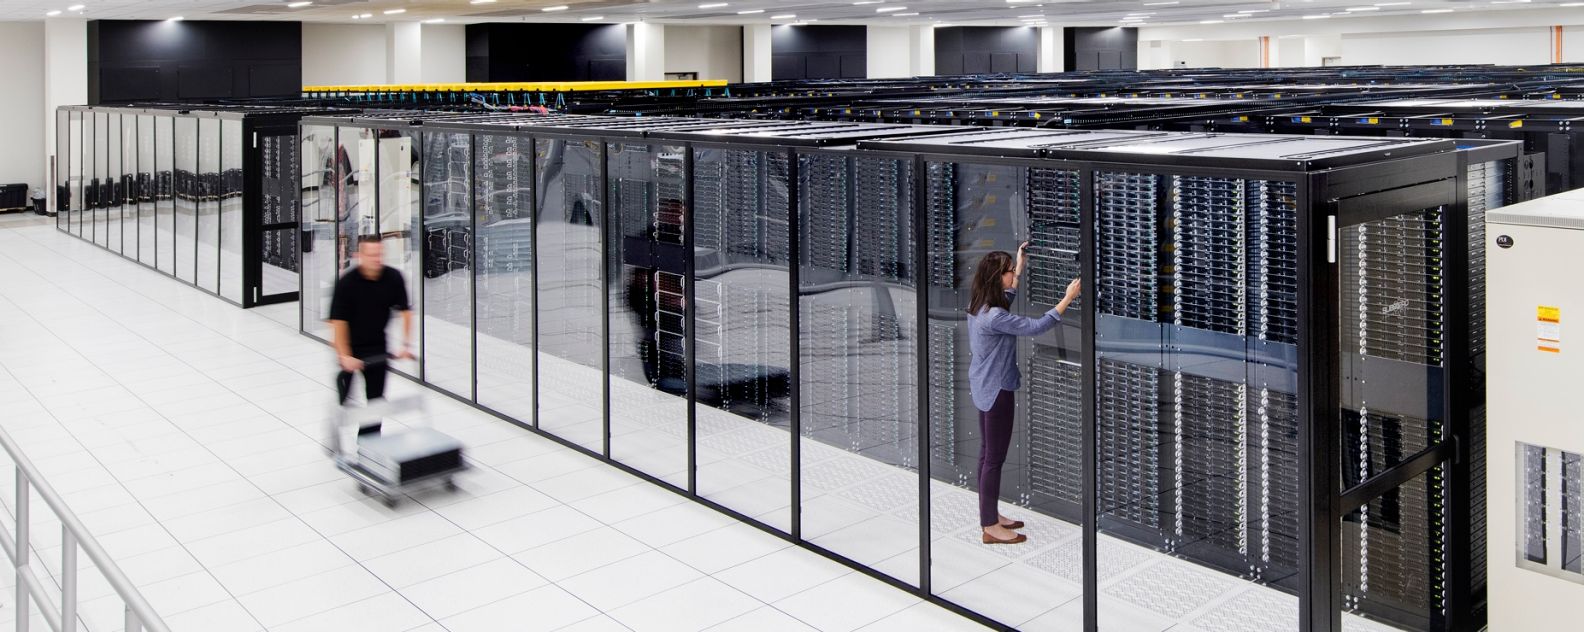 Frau in einem IBM-Datenzentrum